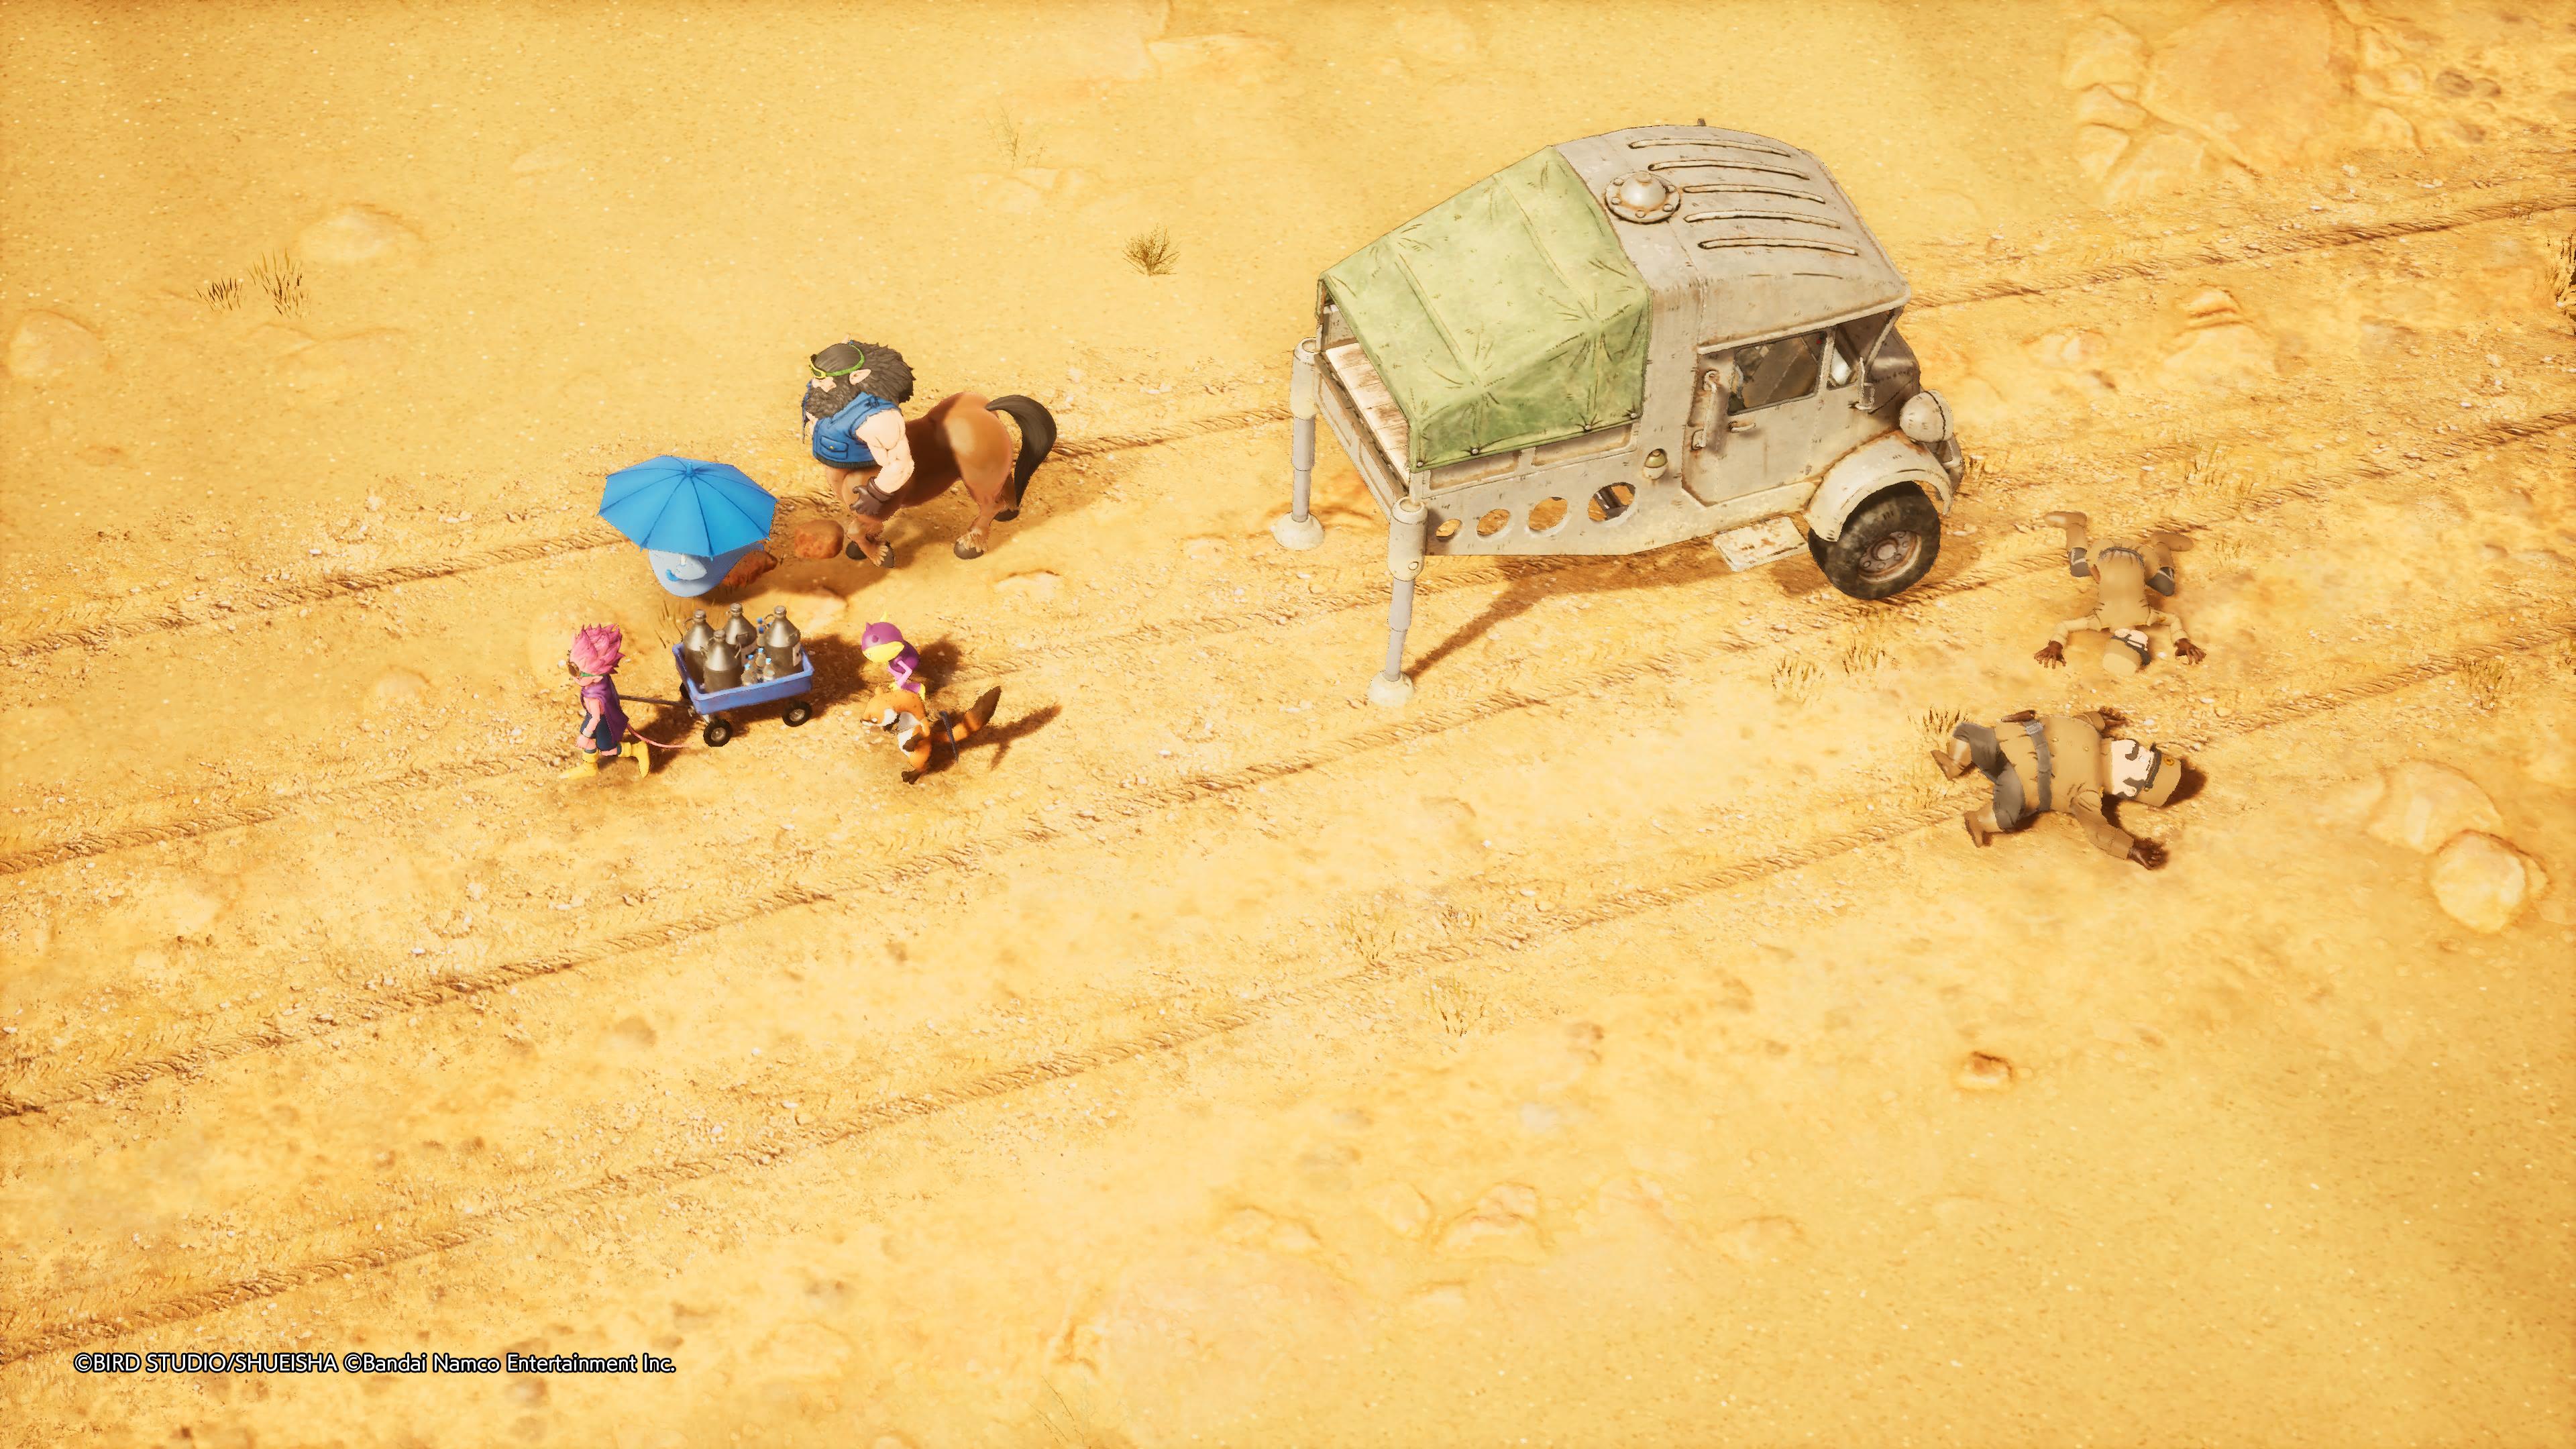 Reseña: Sand Land, una fiel adaptación de la obra de Akira Toriyama 18